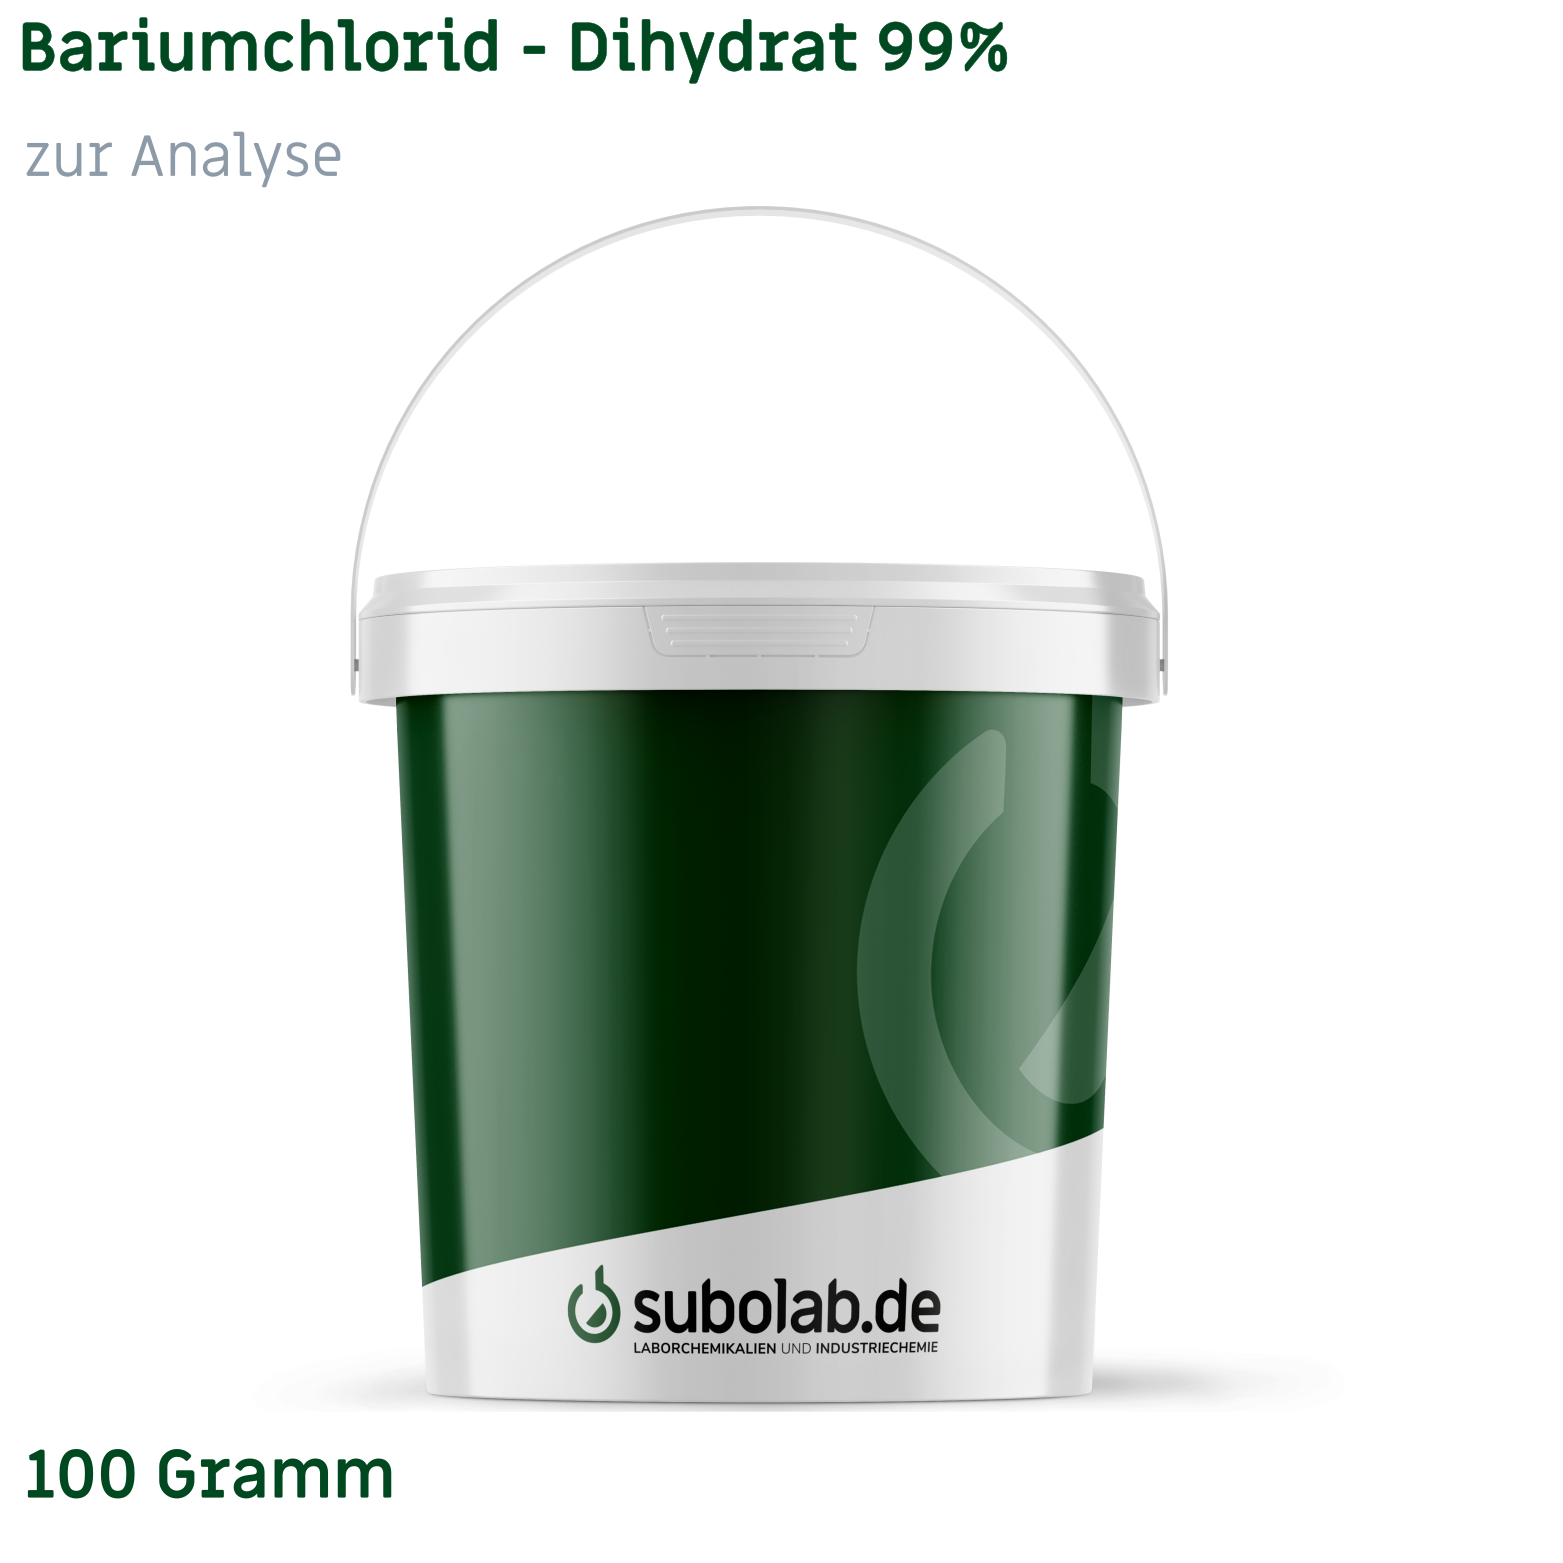 Bild von Bariumchlorid - Dihydrat 99% zur Analyse (100 Gramm)